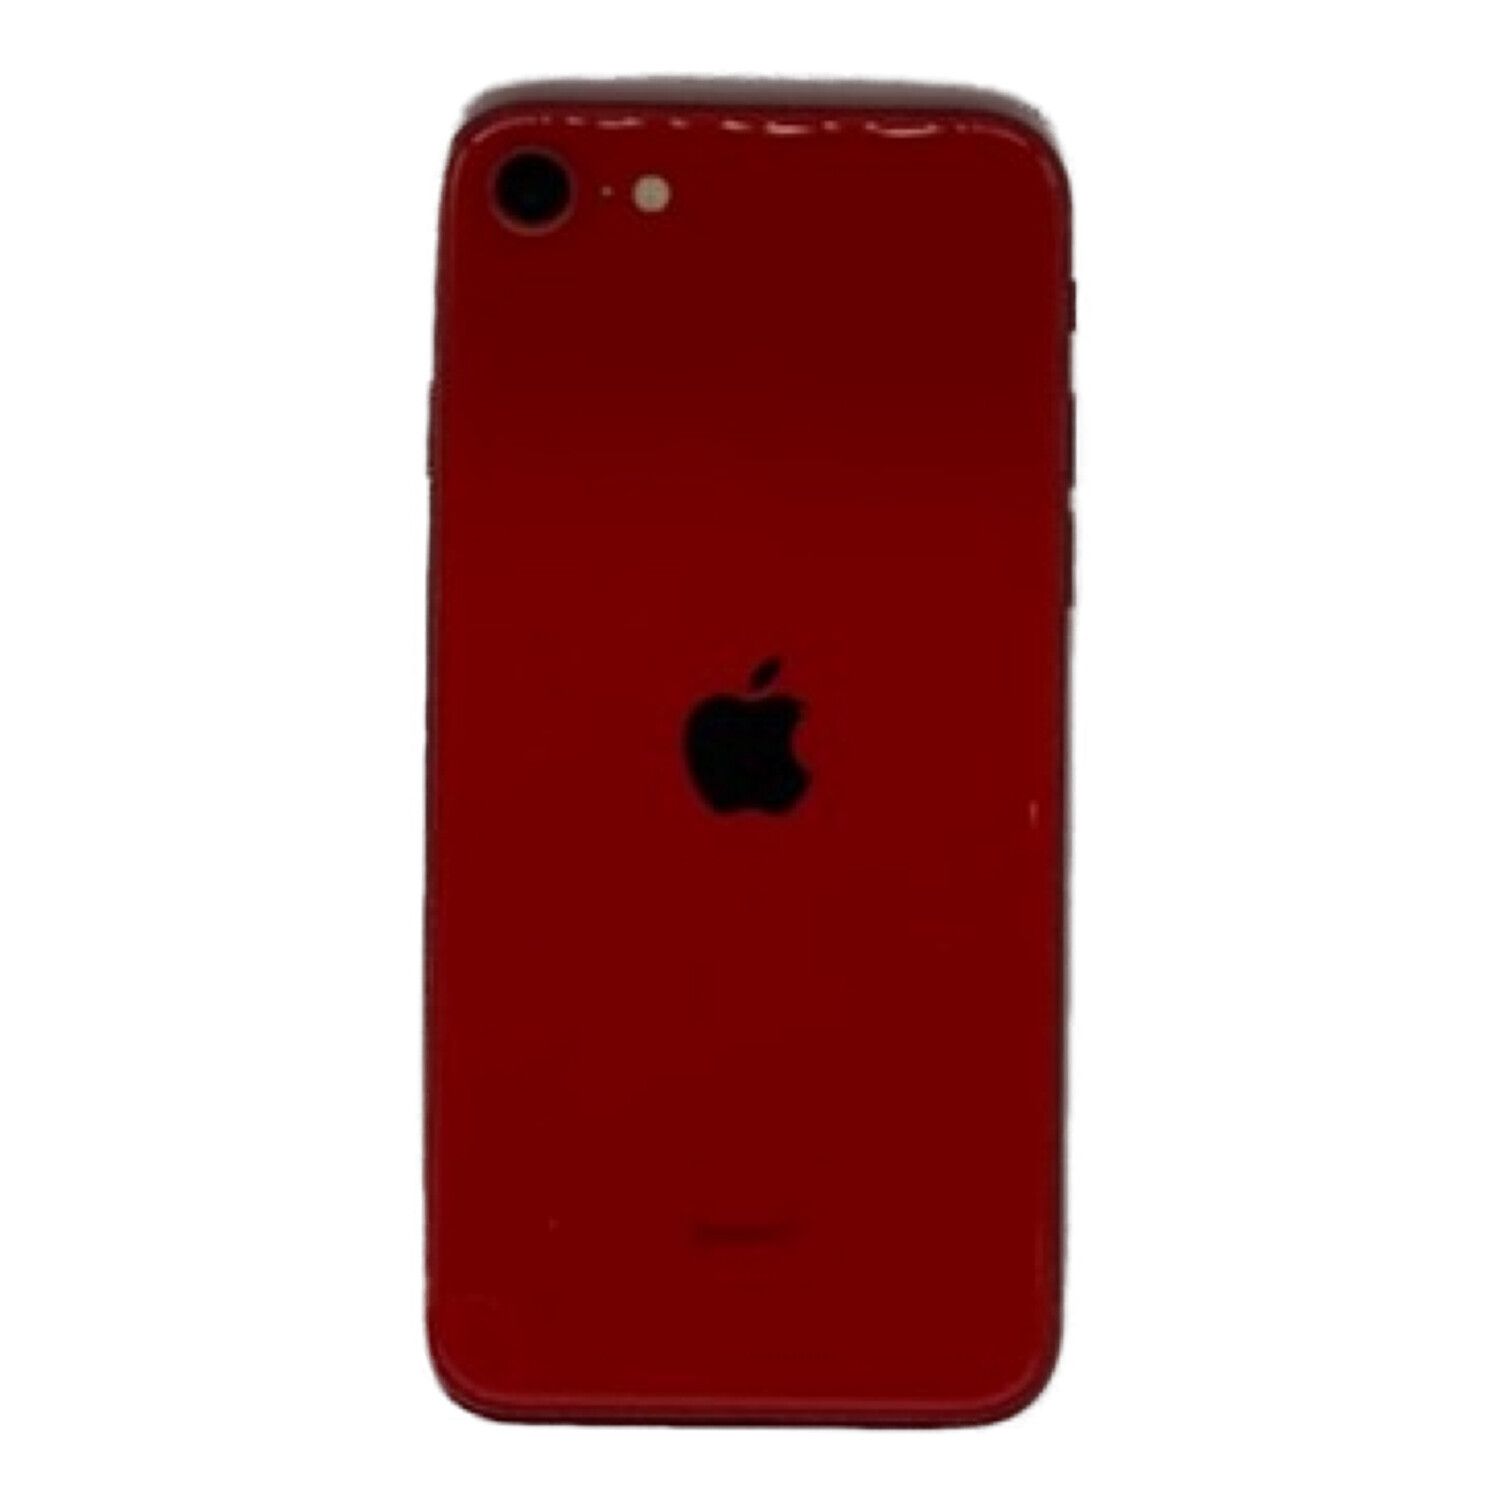 Apple (アップル) iPhone SE(第2世代) レッド MHGR3J/A au 64GB iOS ...